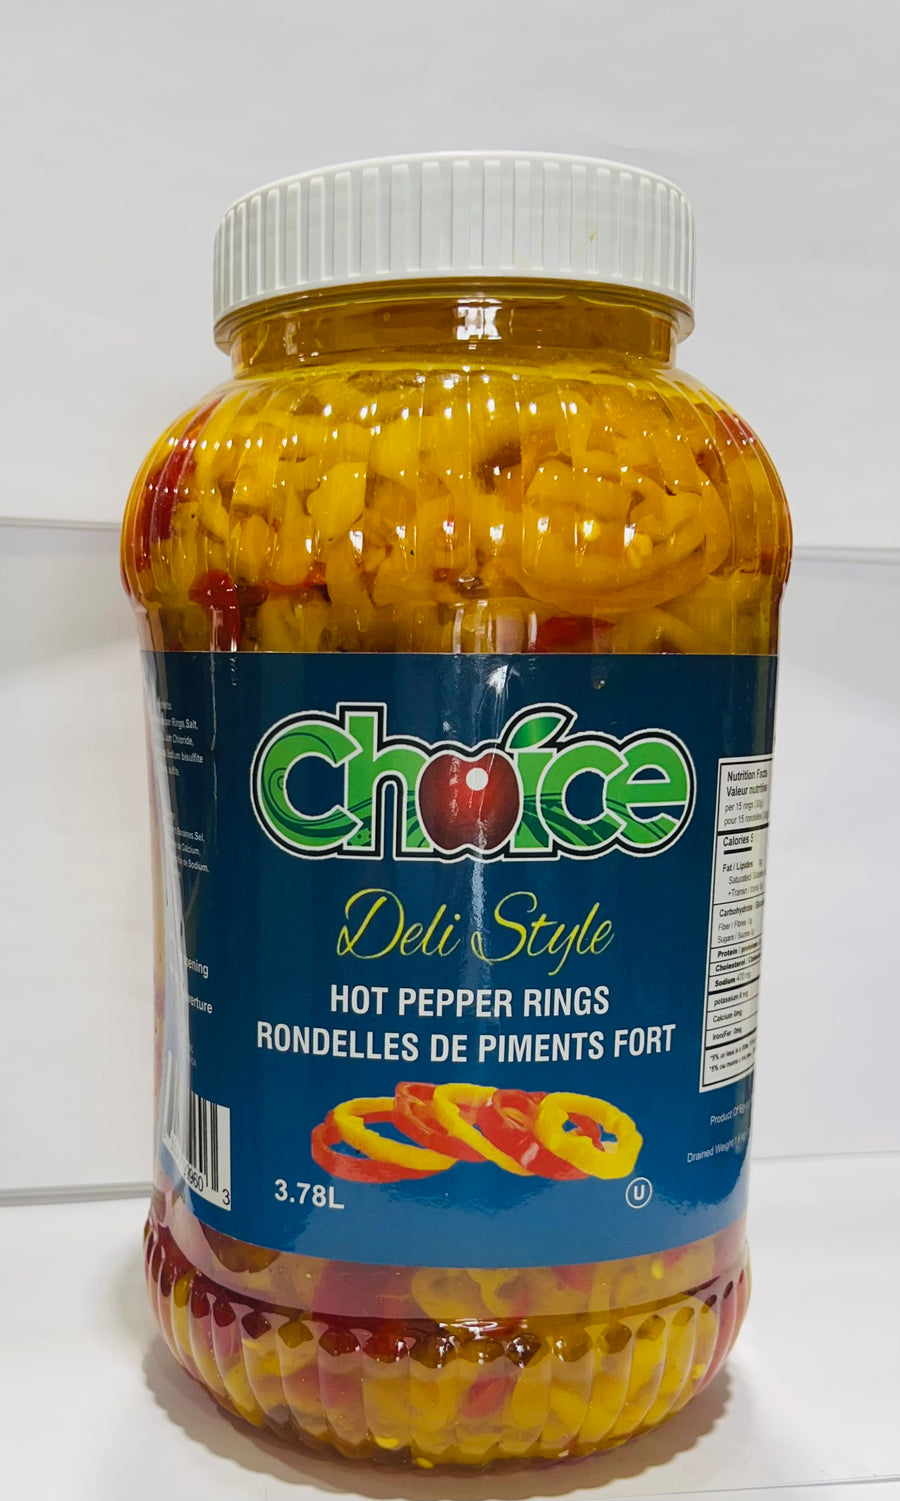 Hot Pepper Rings 3.78L x 4 Jugs